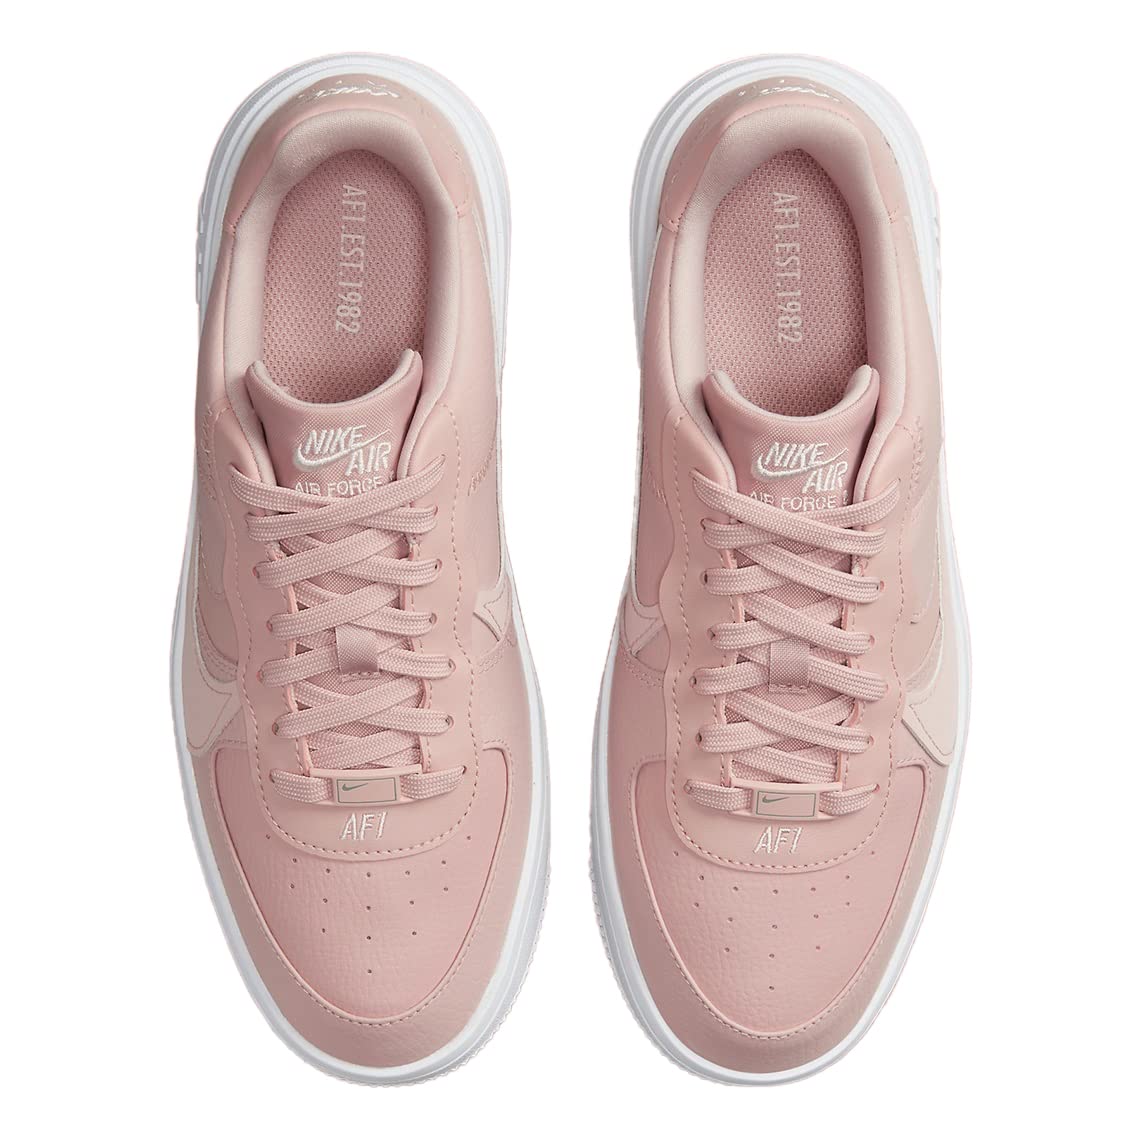 Nike Women's Air Force 1 PLT.AF.ORM Pink Oxford/Light Soft Pink (DJ9946 602)